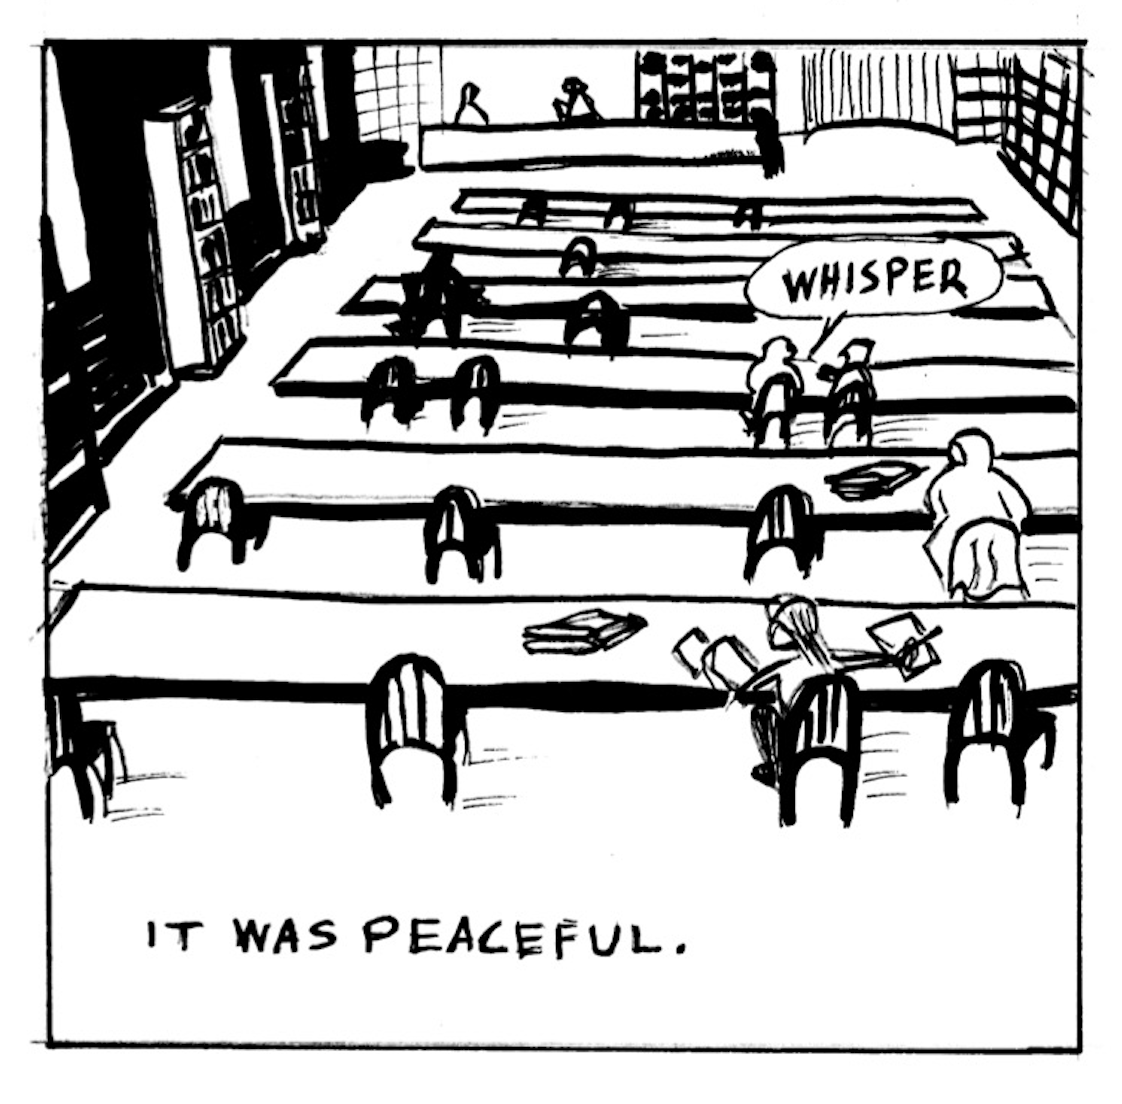 â€œIt was peaceful.â€ People whisper at long library tables.